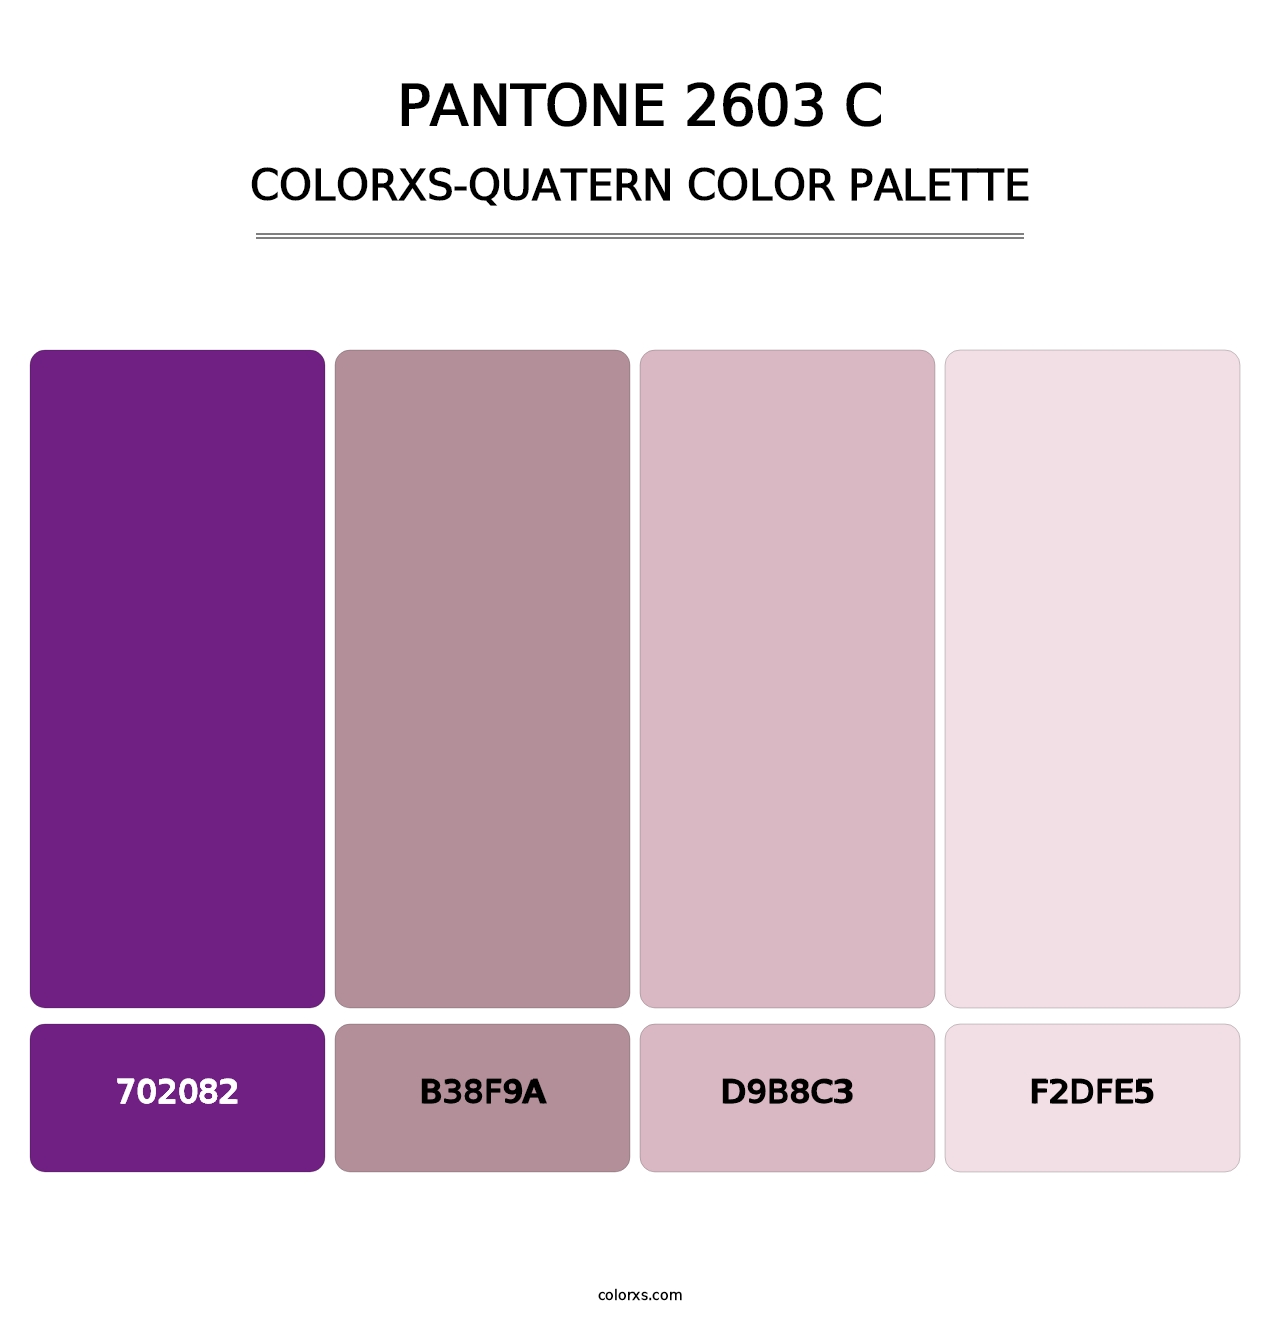 PANTONE 2603 C - Colorxs Quatern Palette